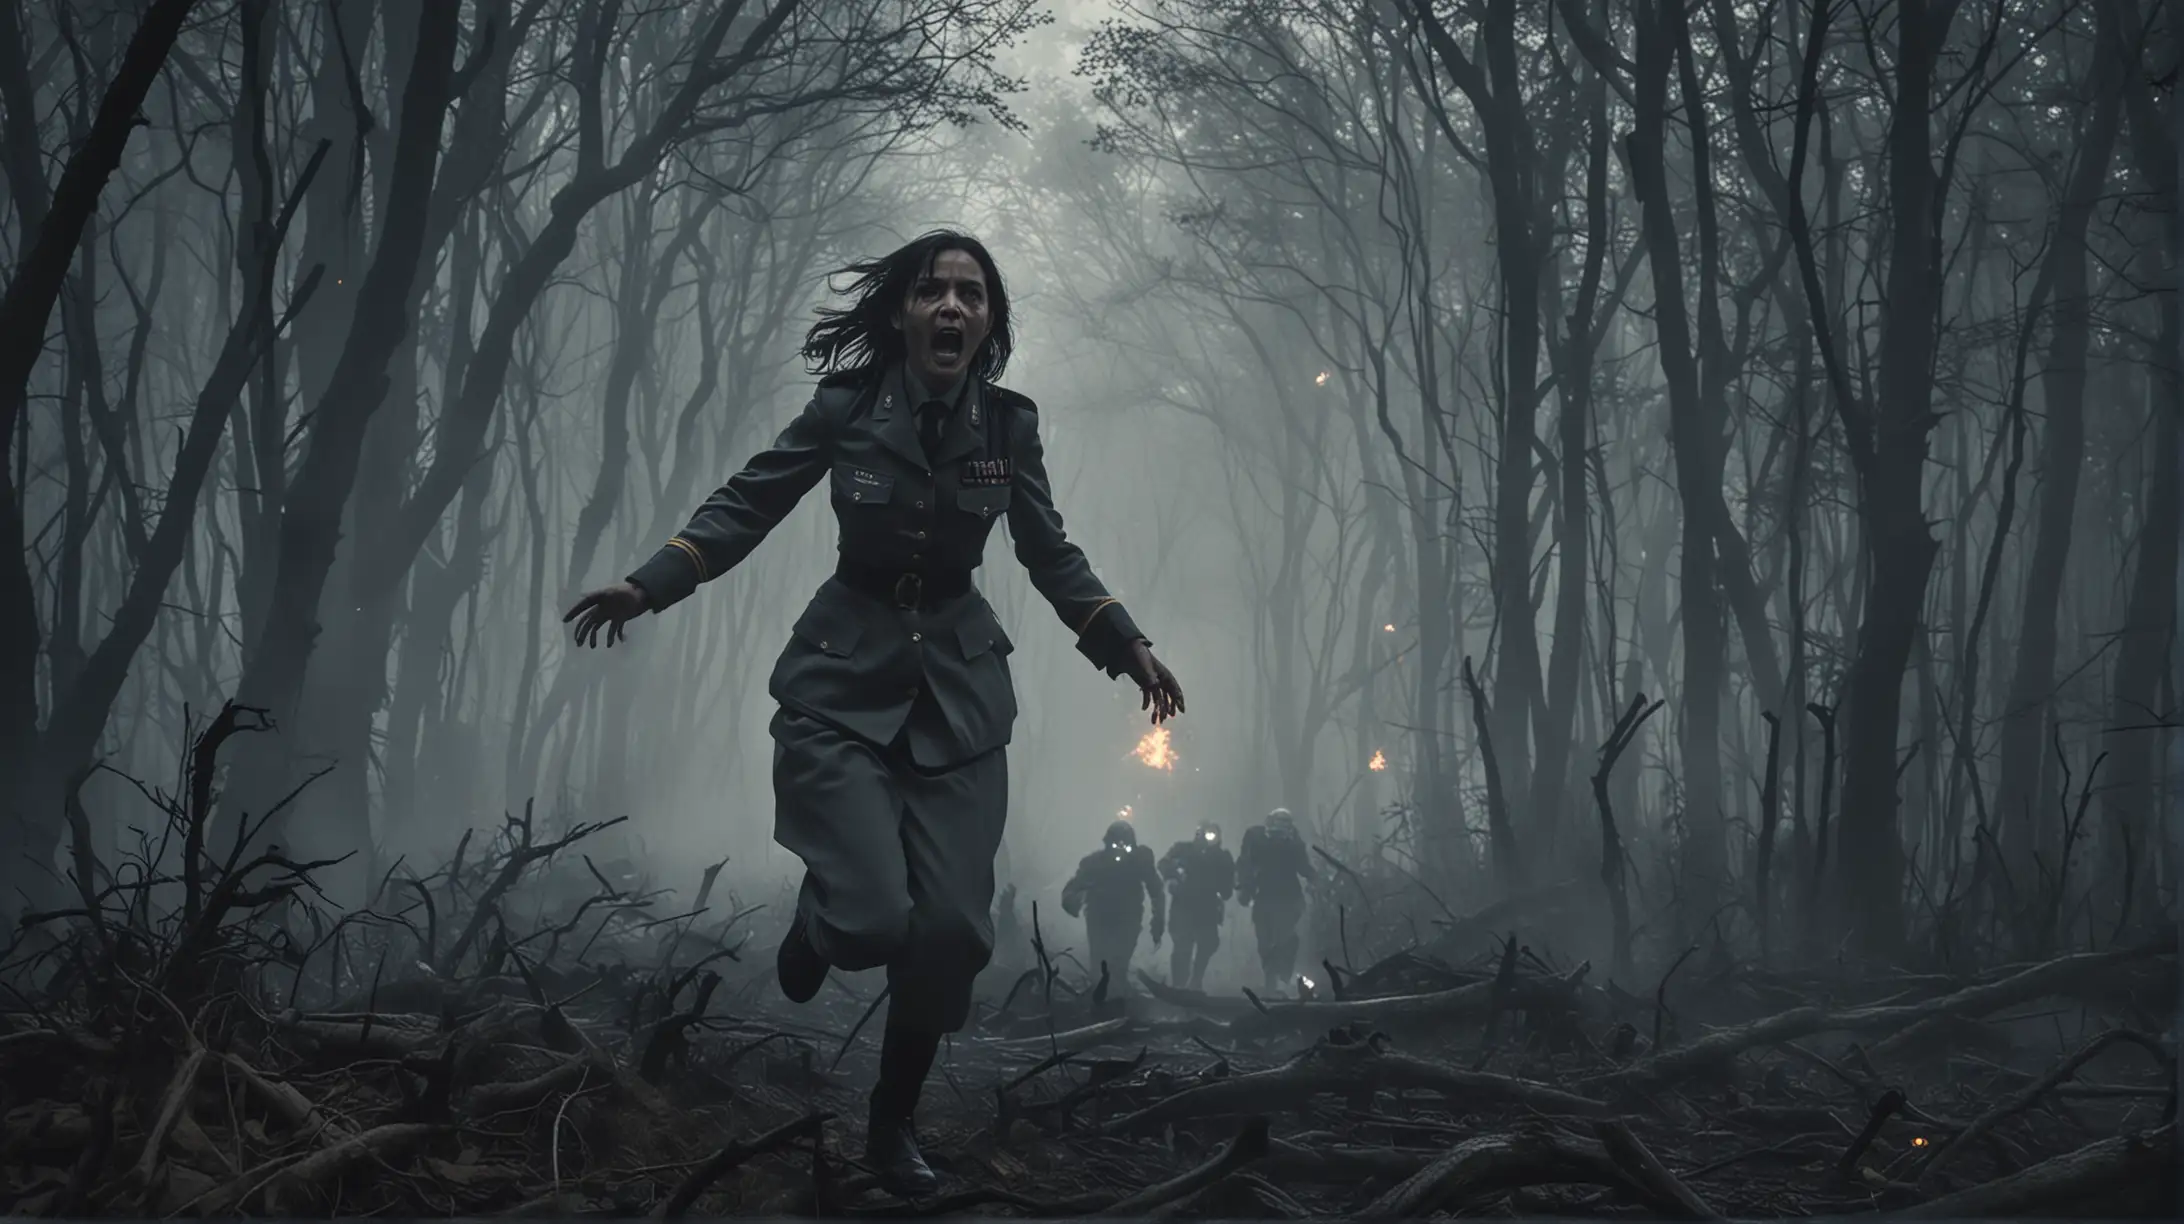 przez stary las biegnie przerażona kobieta mundurze, wyje, za nią biegną demony, dżiny i golemy, noc, dym, atmosfera horroru